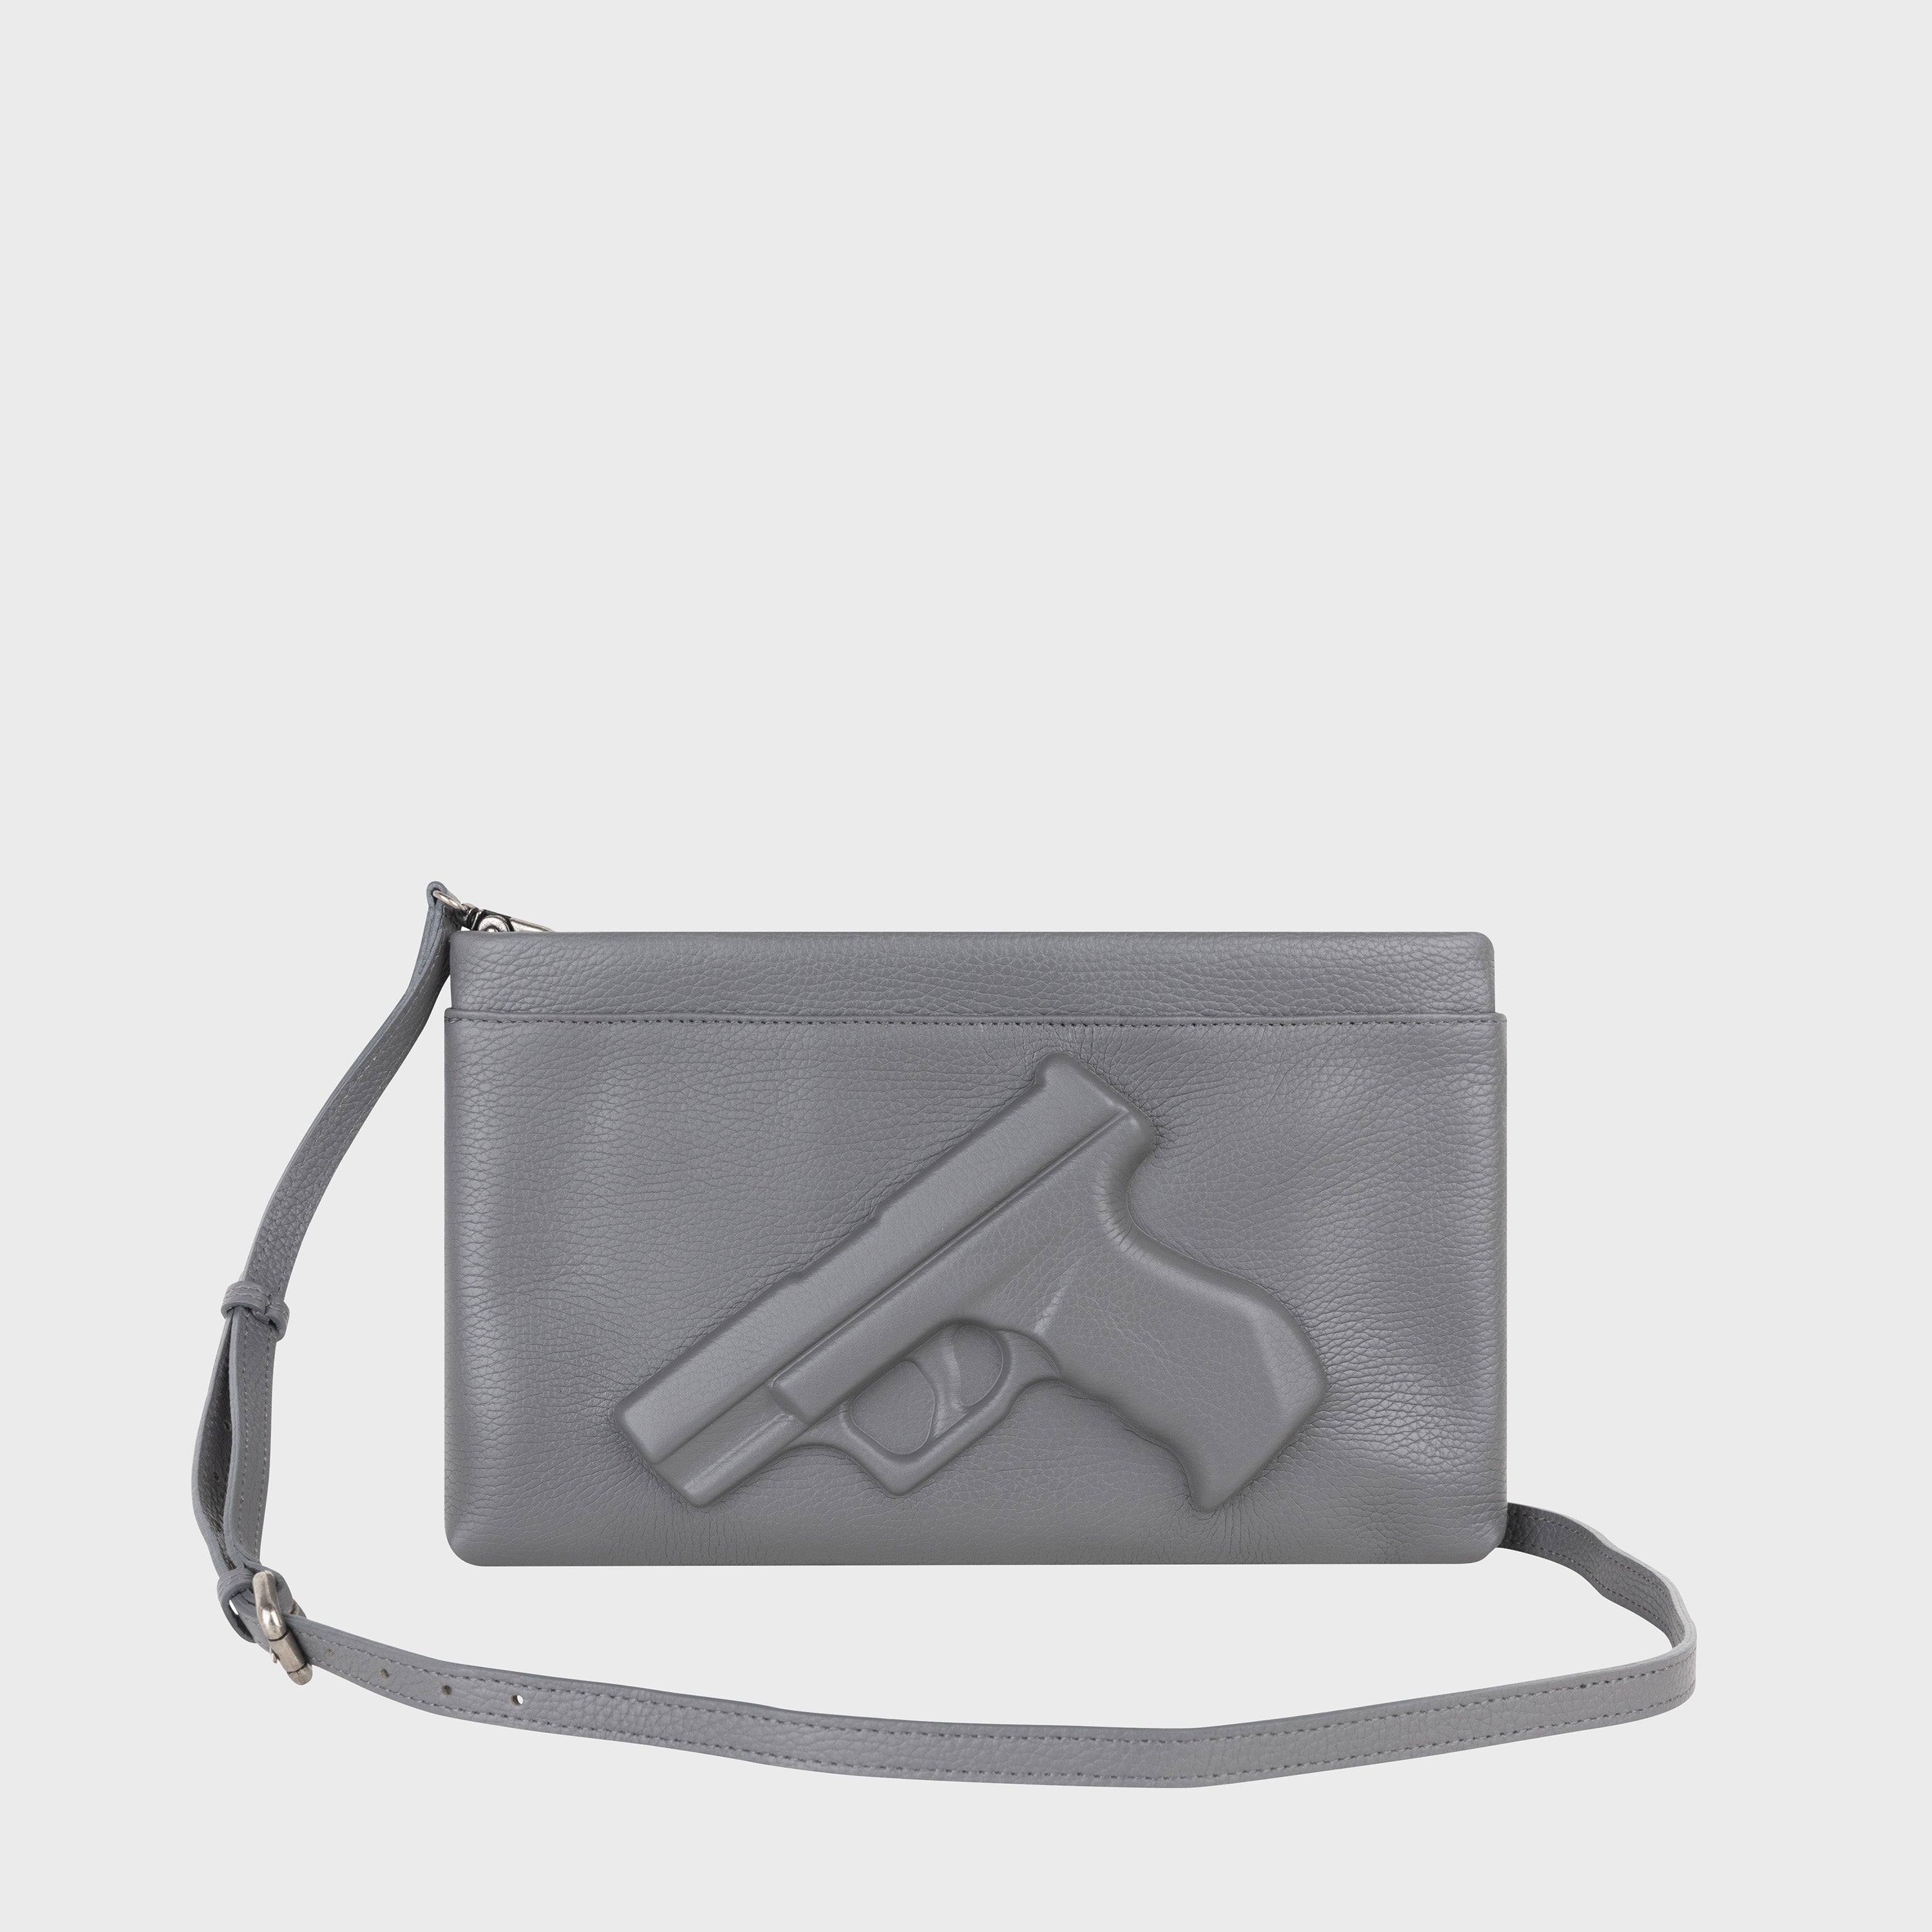 Vlieger & Vandam - Gun Camera Bag Black, embossed leather gun bag